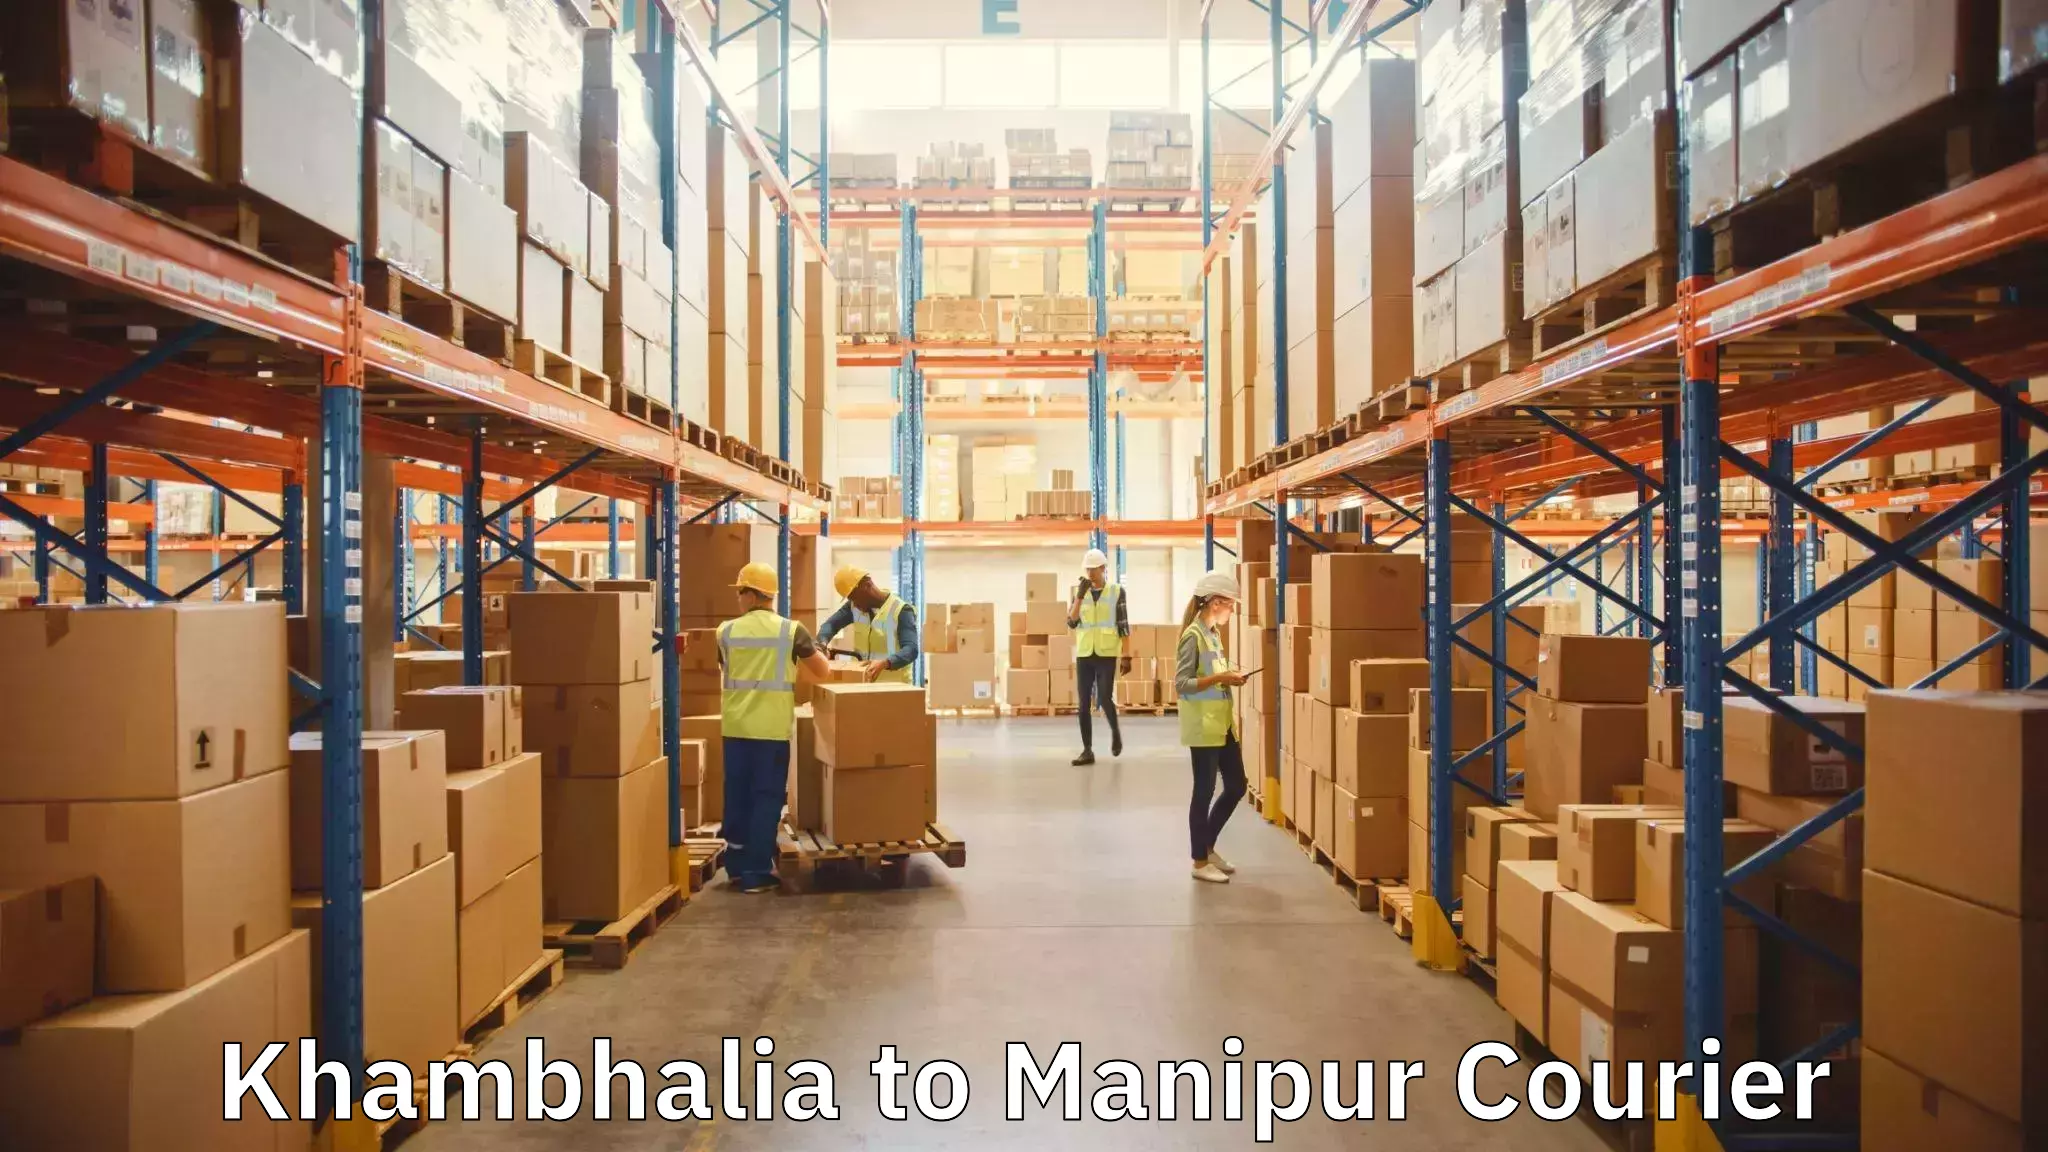 Professional movers and packers Khambhalia to Churachandpur